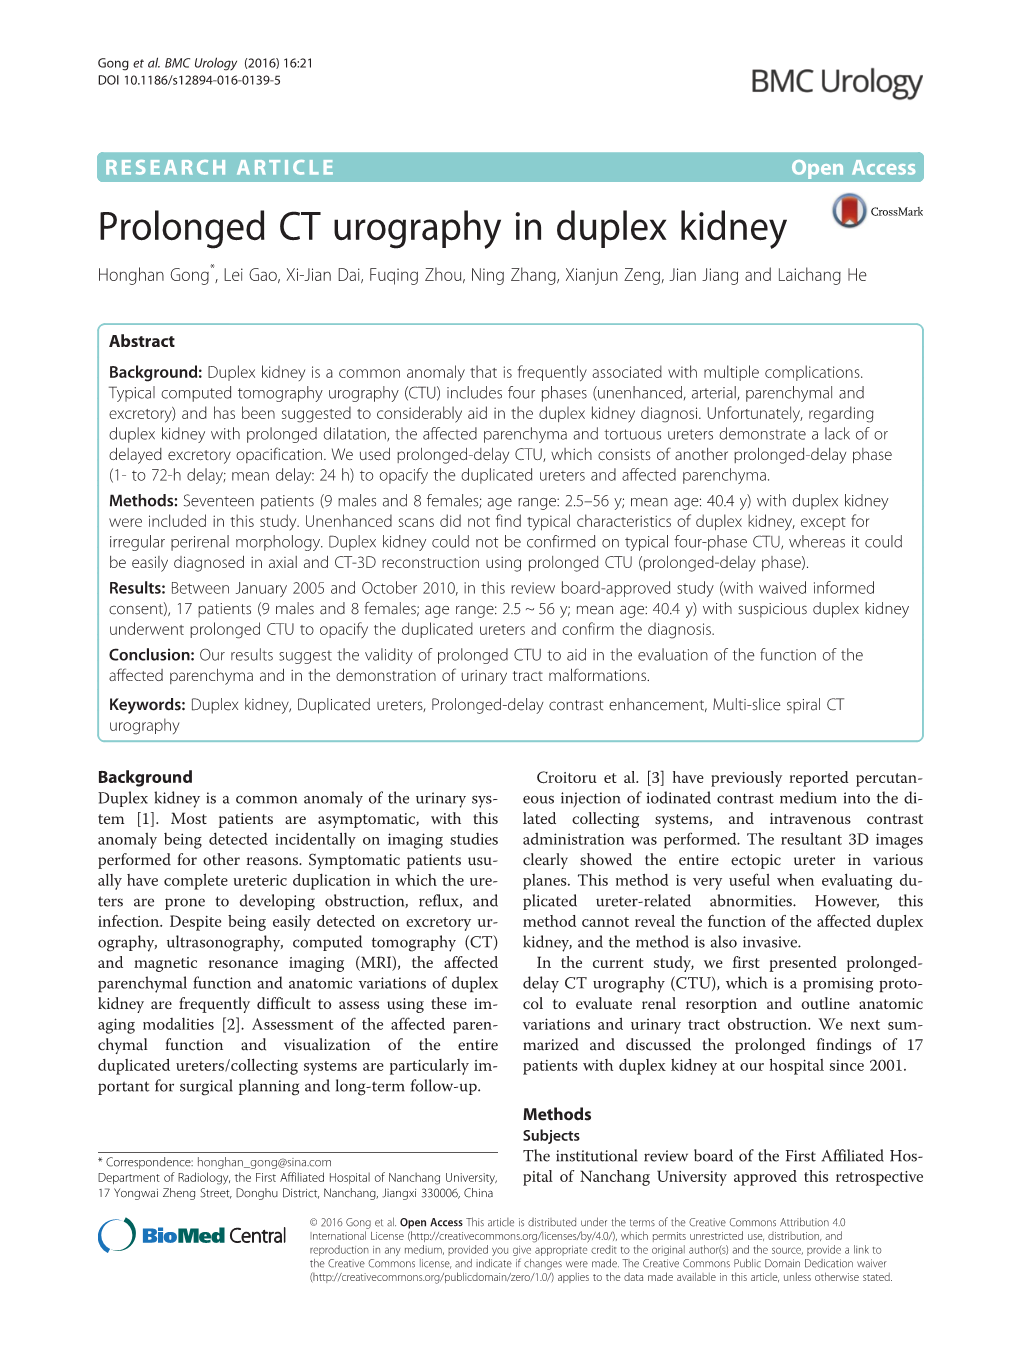 Prolonged CT Urography in Duplex Kidney Honghan Gong*, Lei Gao, Xi-Jian Dai, Fuqing Zhou, Ning Zhang, Xianjun Zeng, Jian Jiang and Laichang He